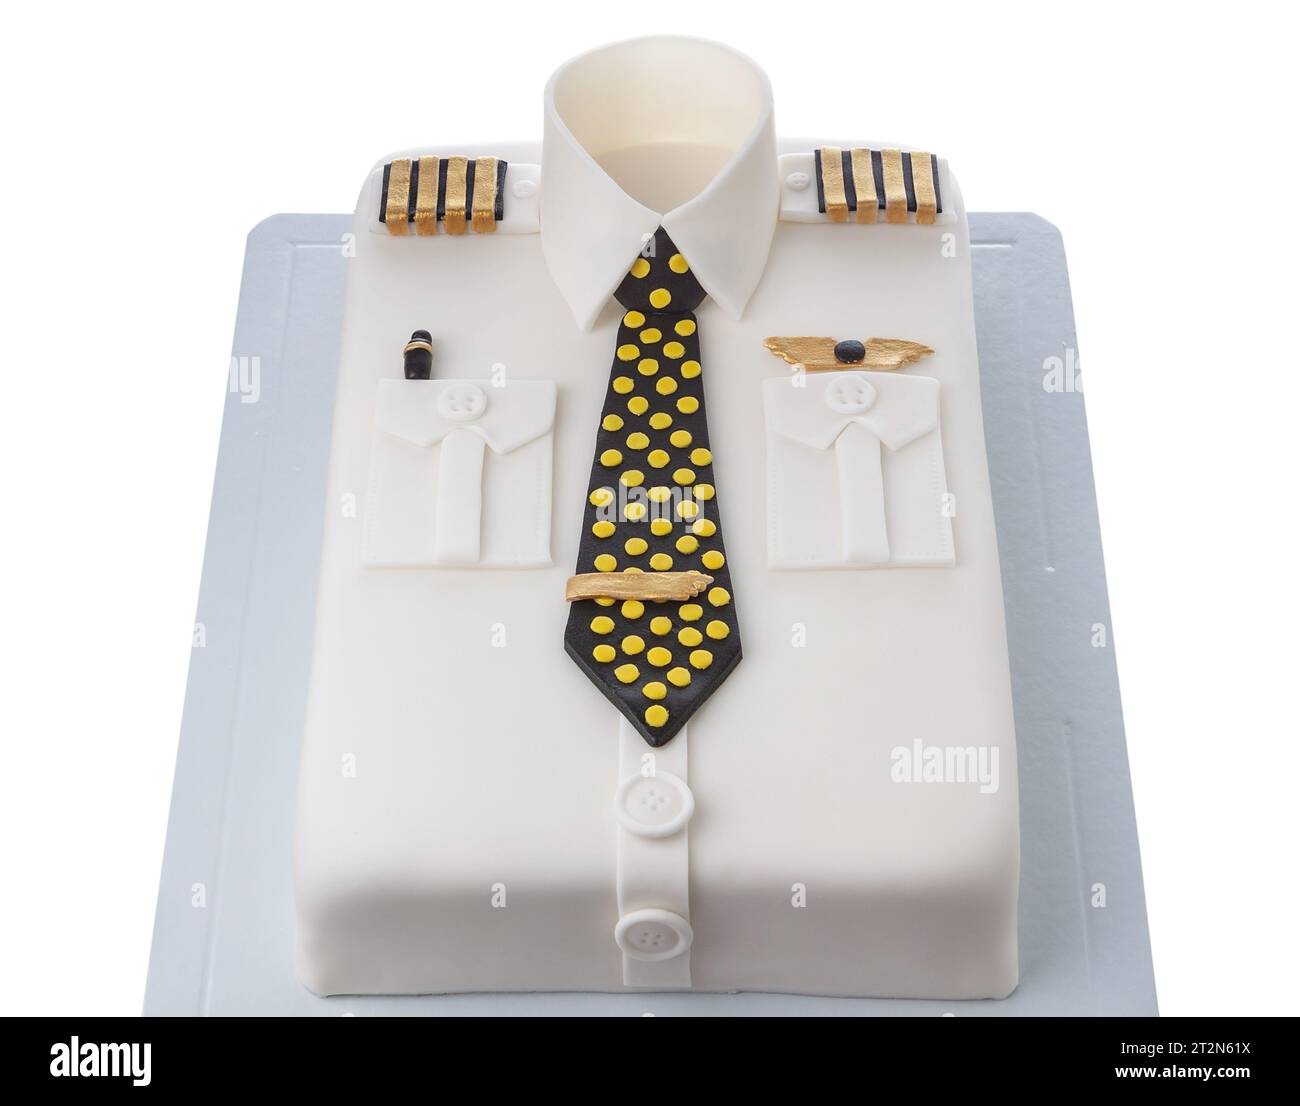 Torta creativa modellata in 3D fatta di pasta bianca di zucchero a forma di camicia da pilota di aeroplani con cravatta su sfondo bianco. Foto Stock